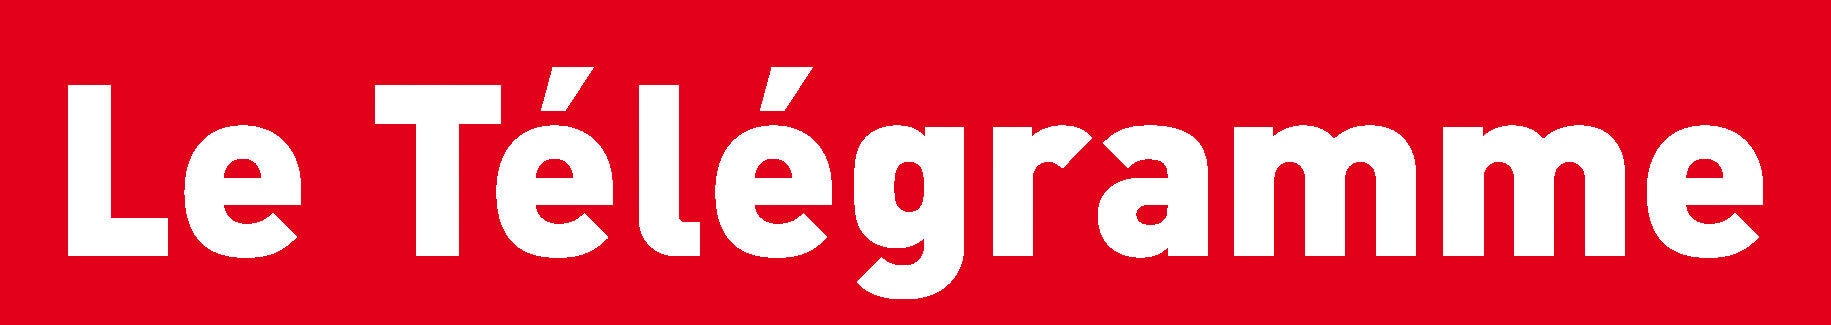 Le logo graphique du Télégramme.